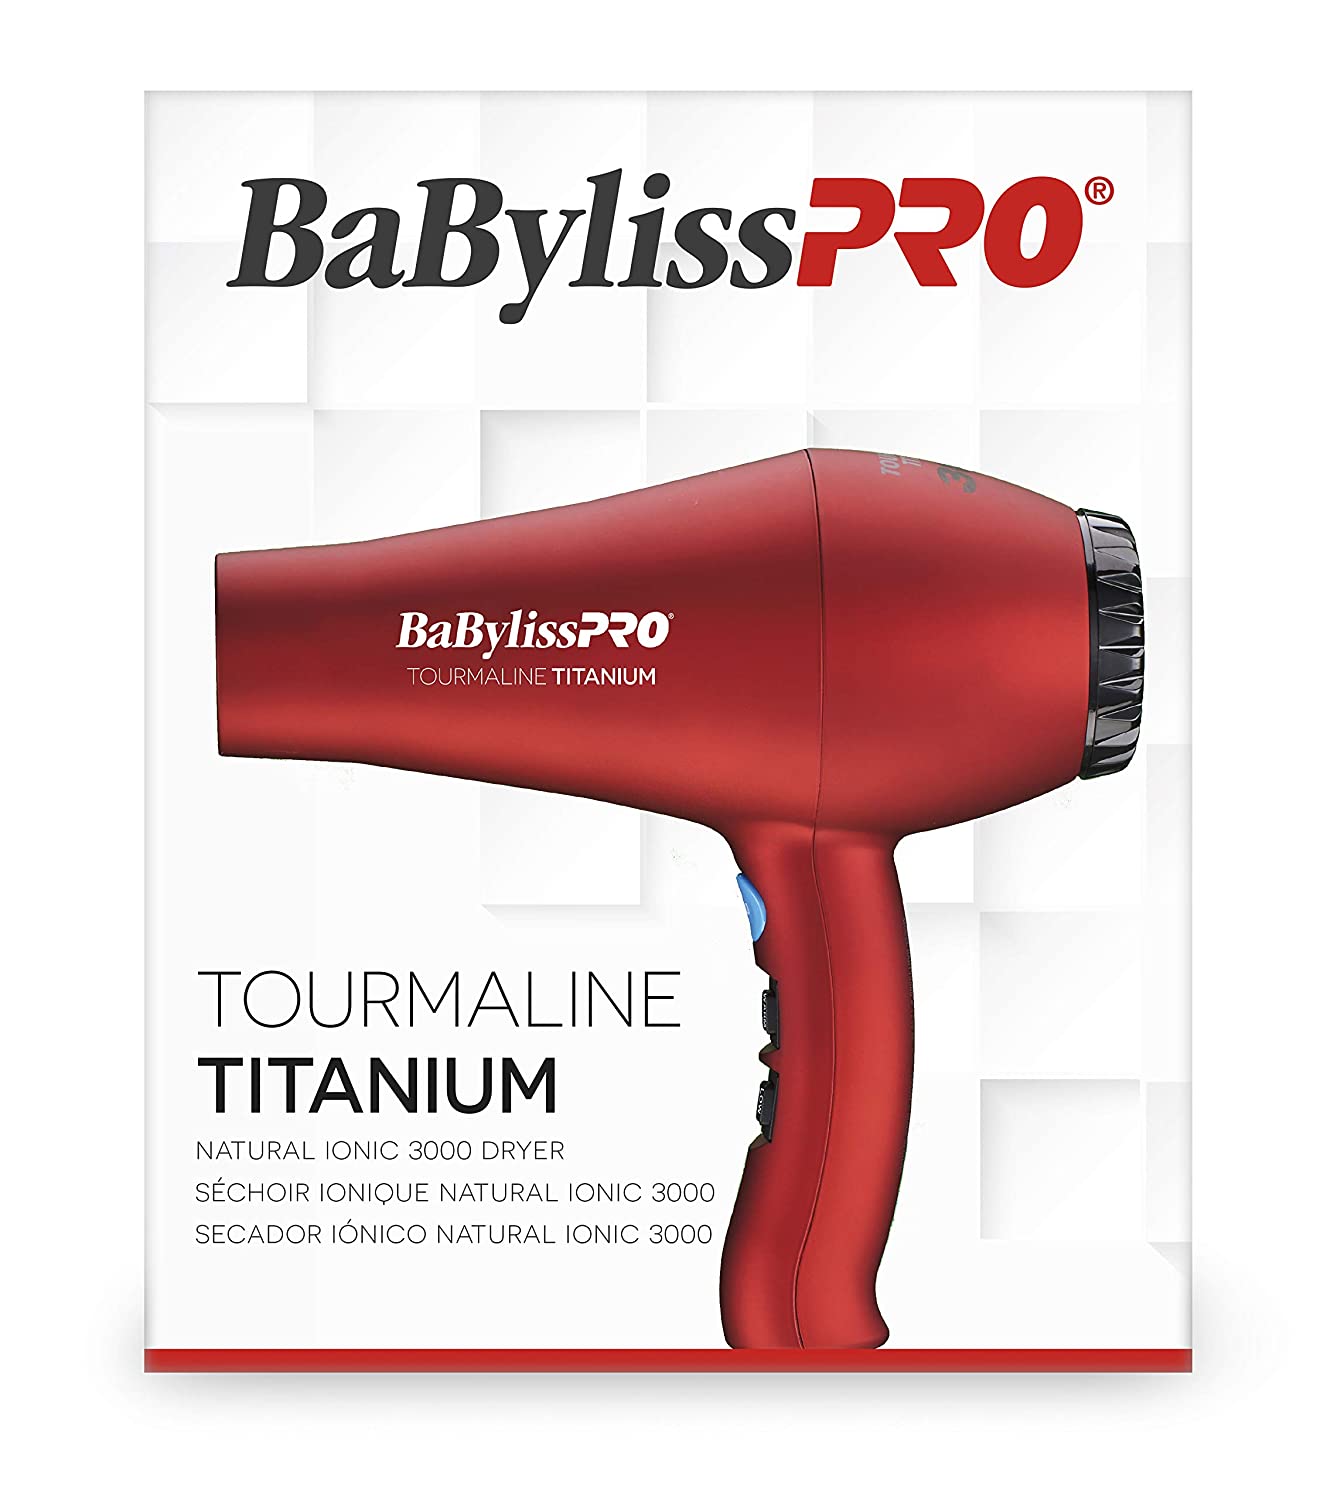 BABYLISSPRO TOURMALINE TITANIUM 3000 HAIR DRYER